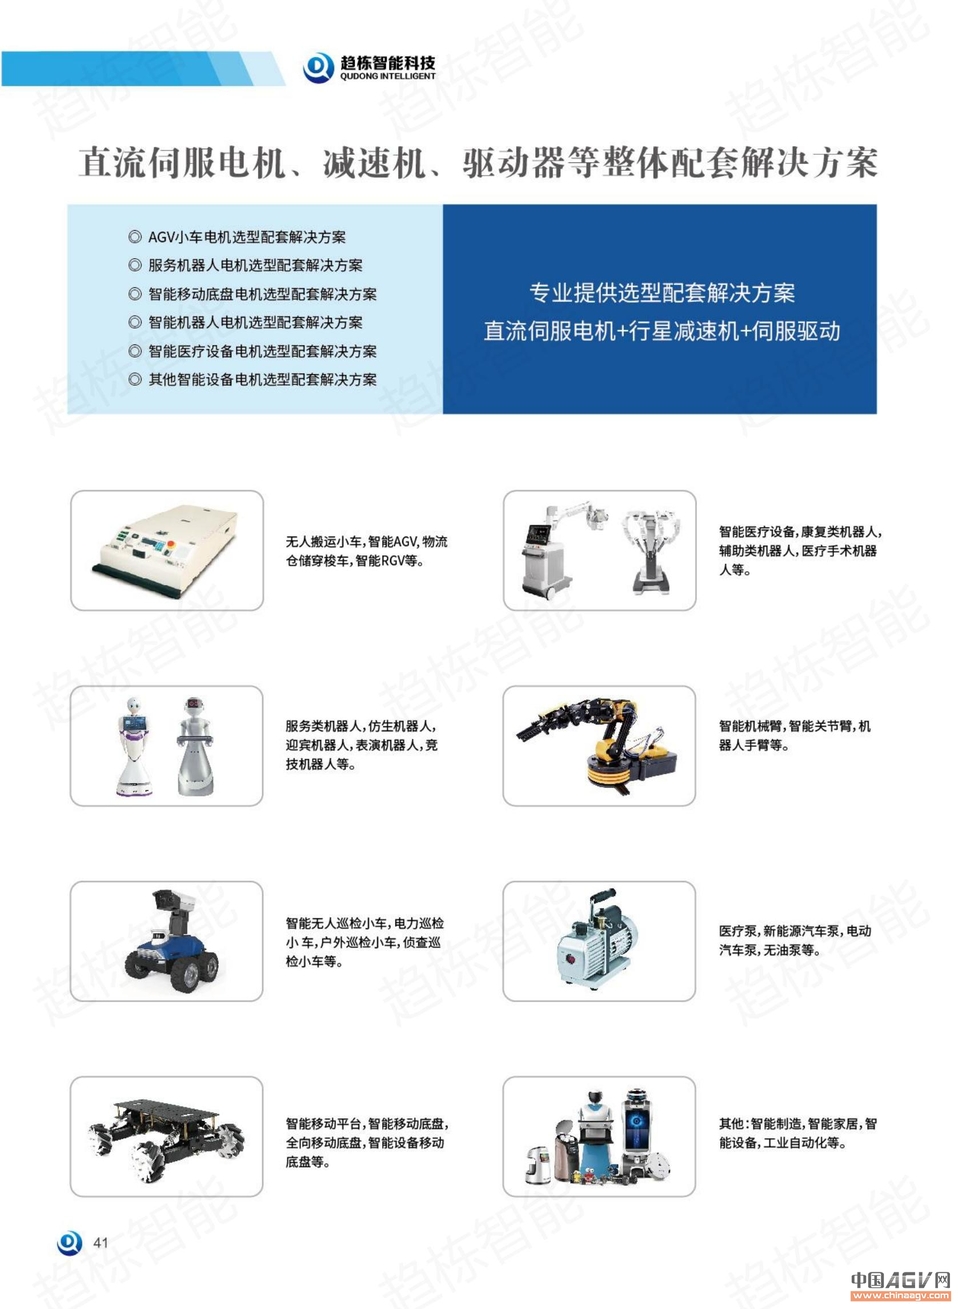 AGV专用直流伺服电机 机器人专用直流伺服电机_中国AGV网(www.chinaagv.com)